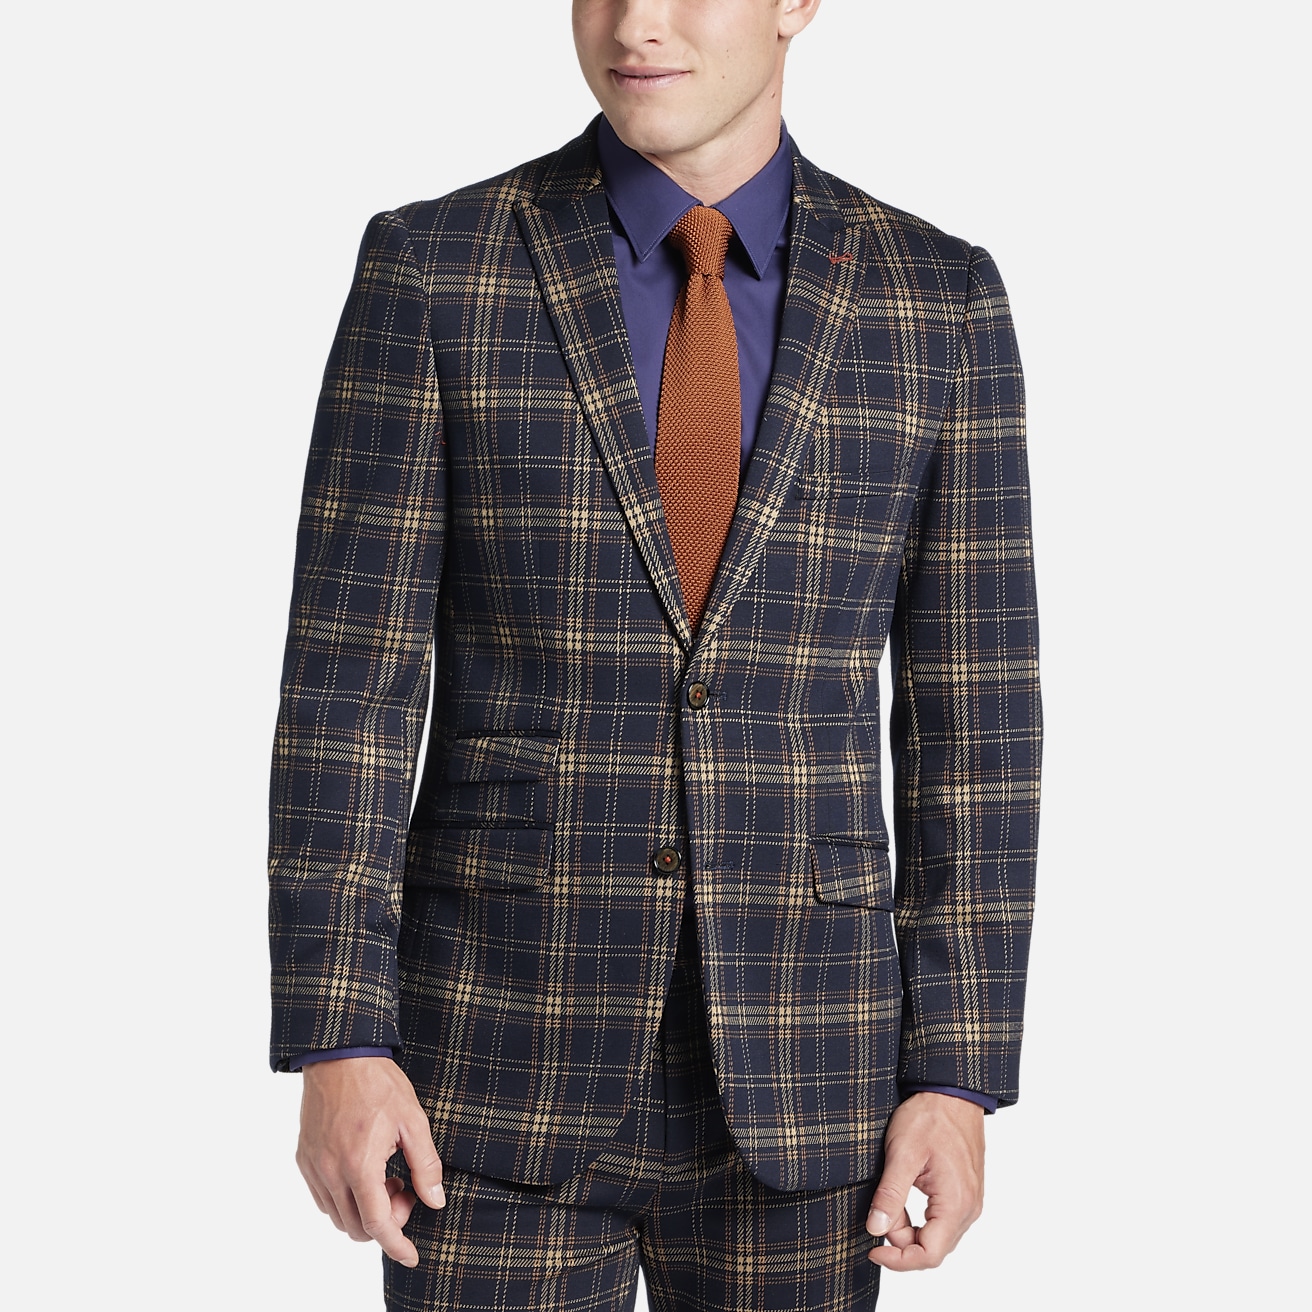 Paisley & Gray Slim Fit Plaid Peak Lapel Suit Separates Jacket